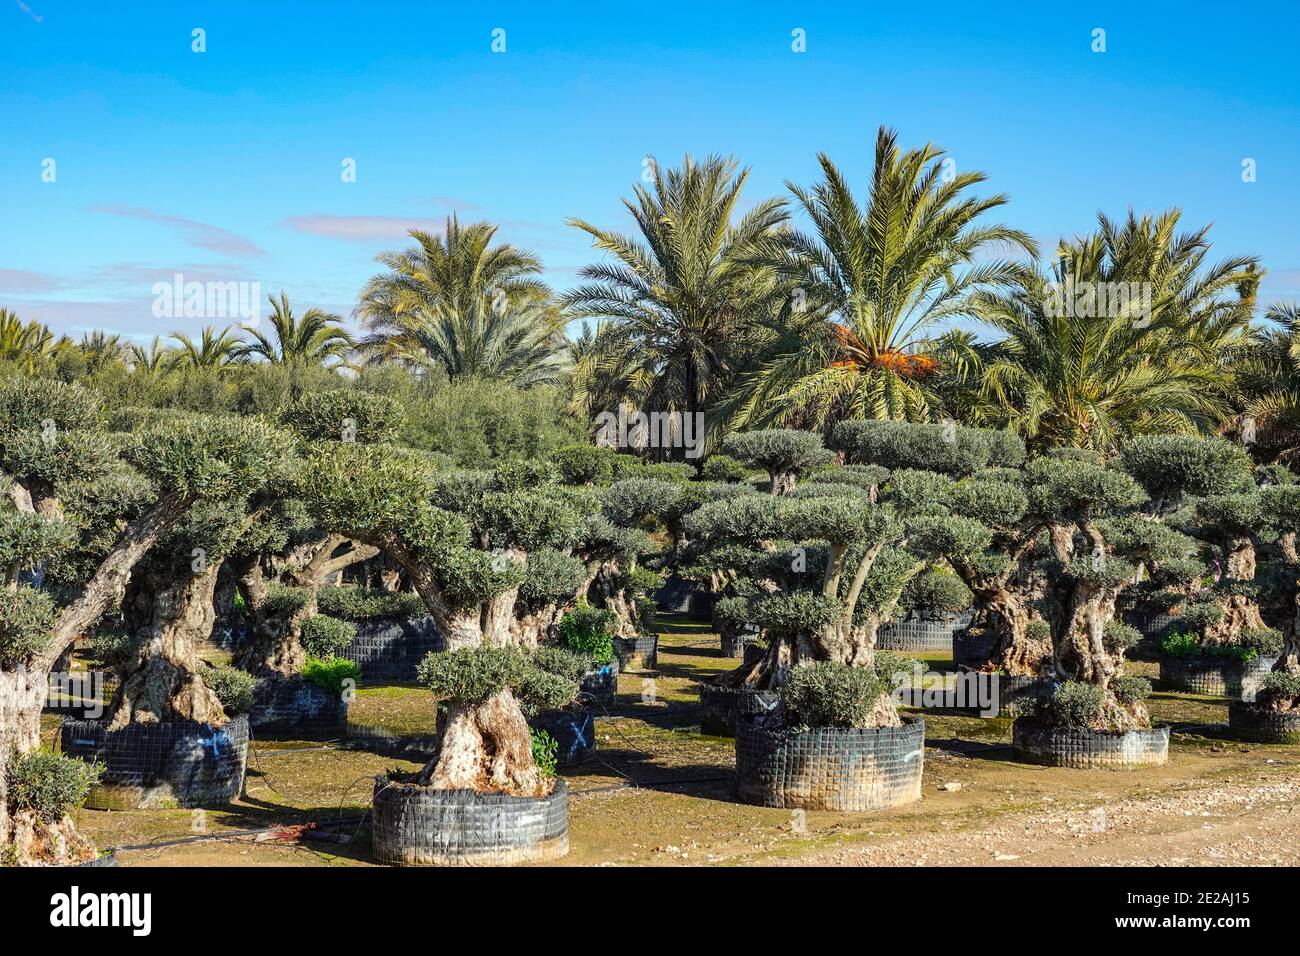 Pépinière pour la culture d'oliviers dans une vaste zone agricole plate, centre de jardin près d'Elche, Costa Blanca, Espagne Banque D'Images